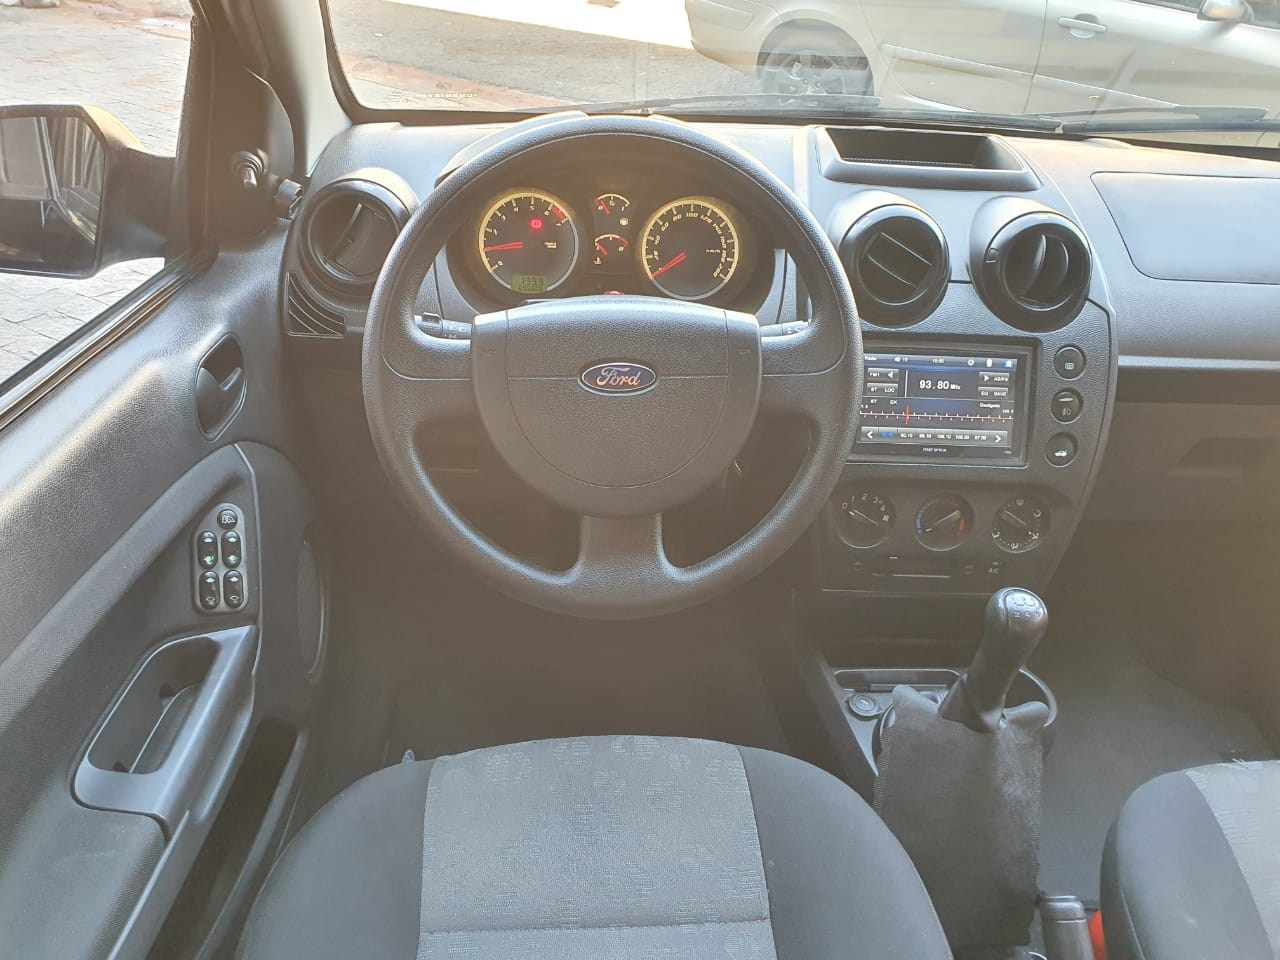 Fiesta Hatch 1.6 4P SE FLEX